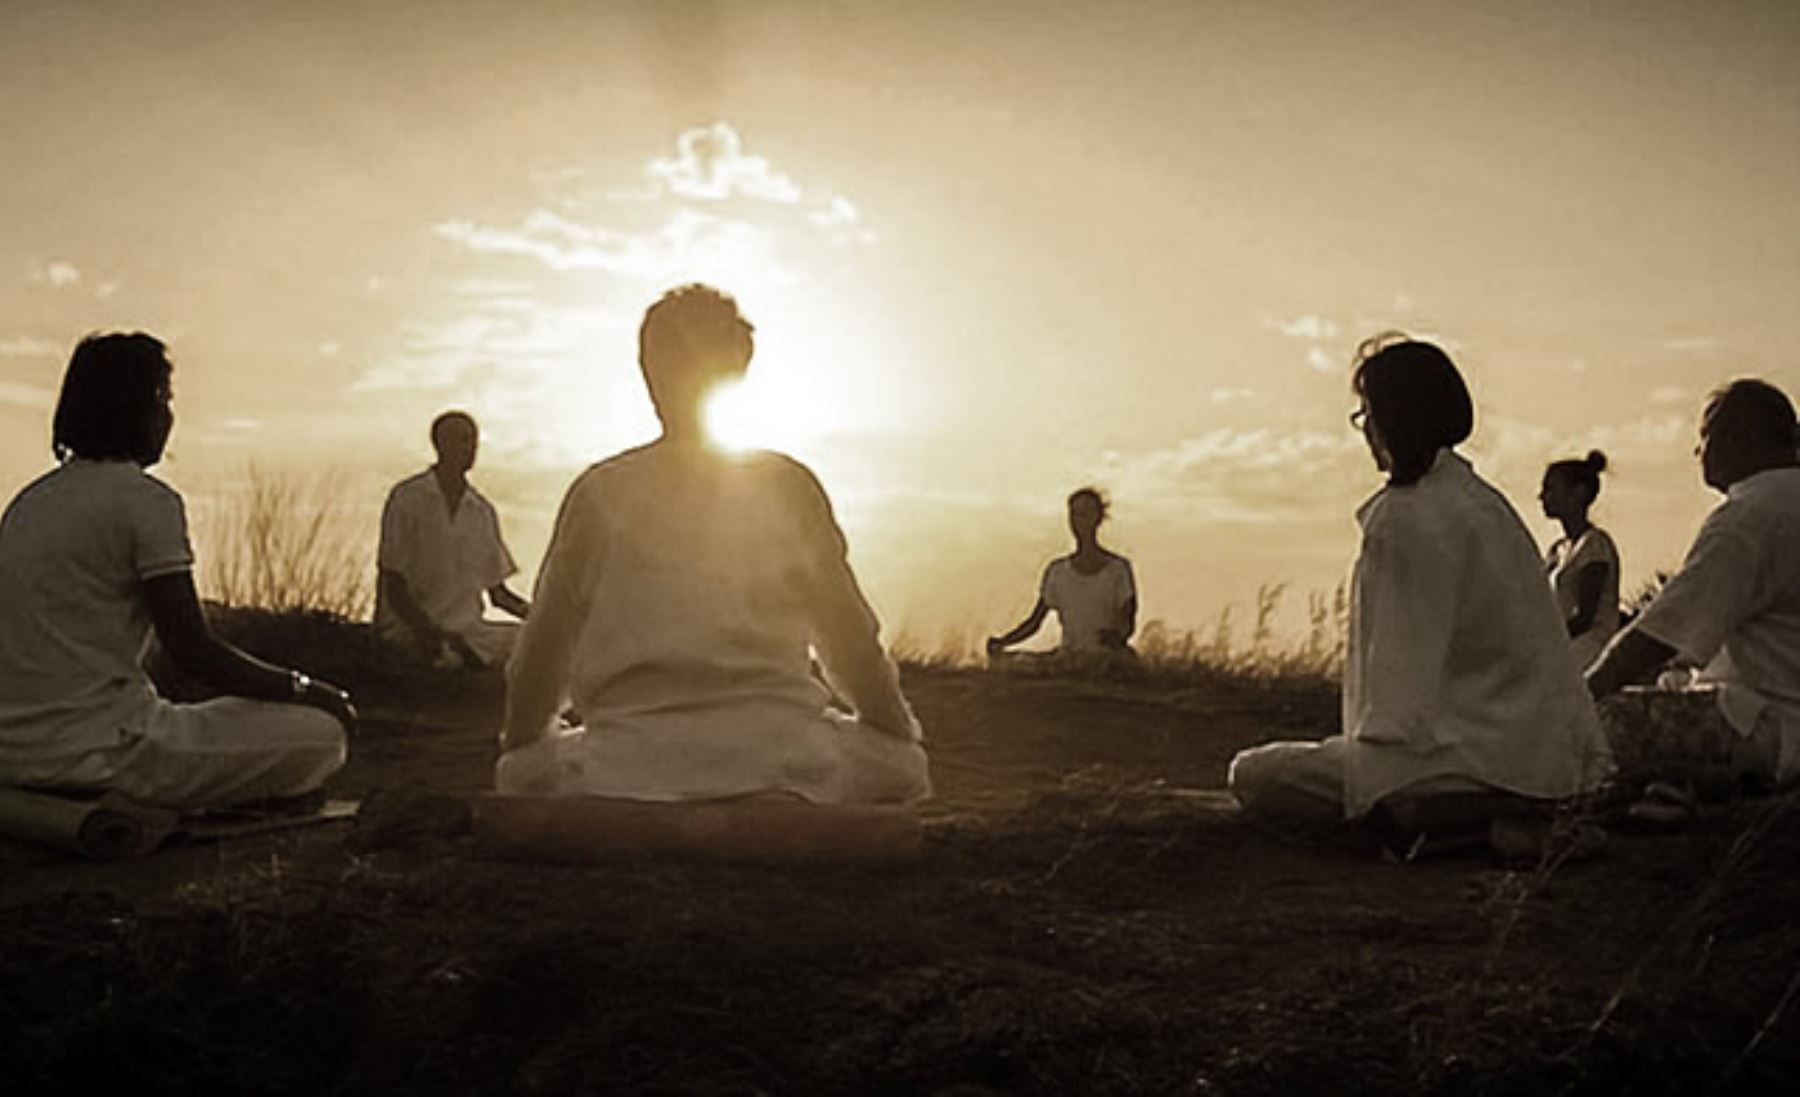 Meditar, una alternativa para saber vivir el presente y alcanzar una conciencia plena.